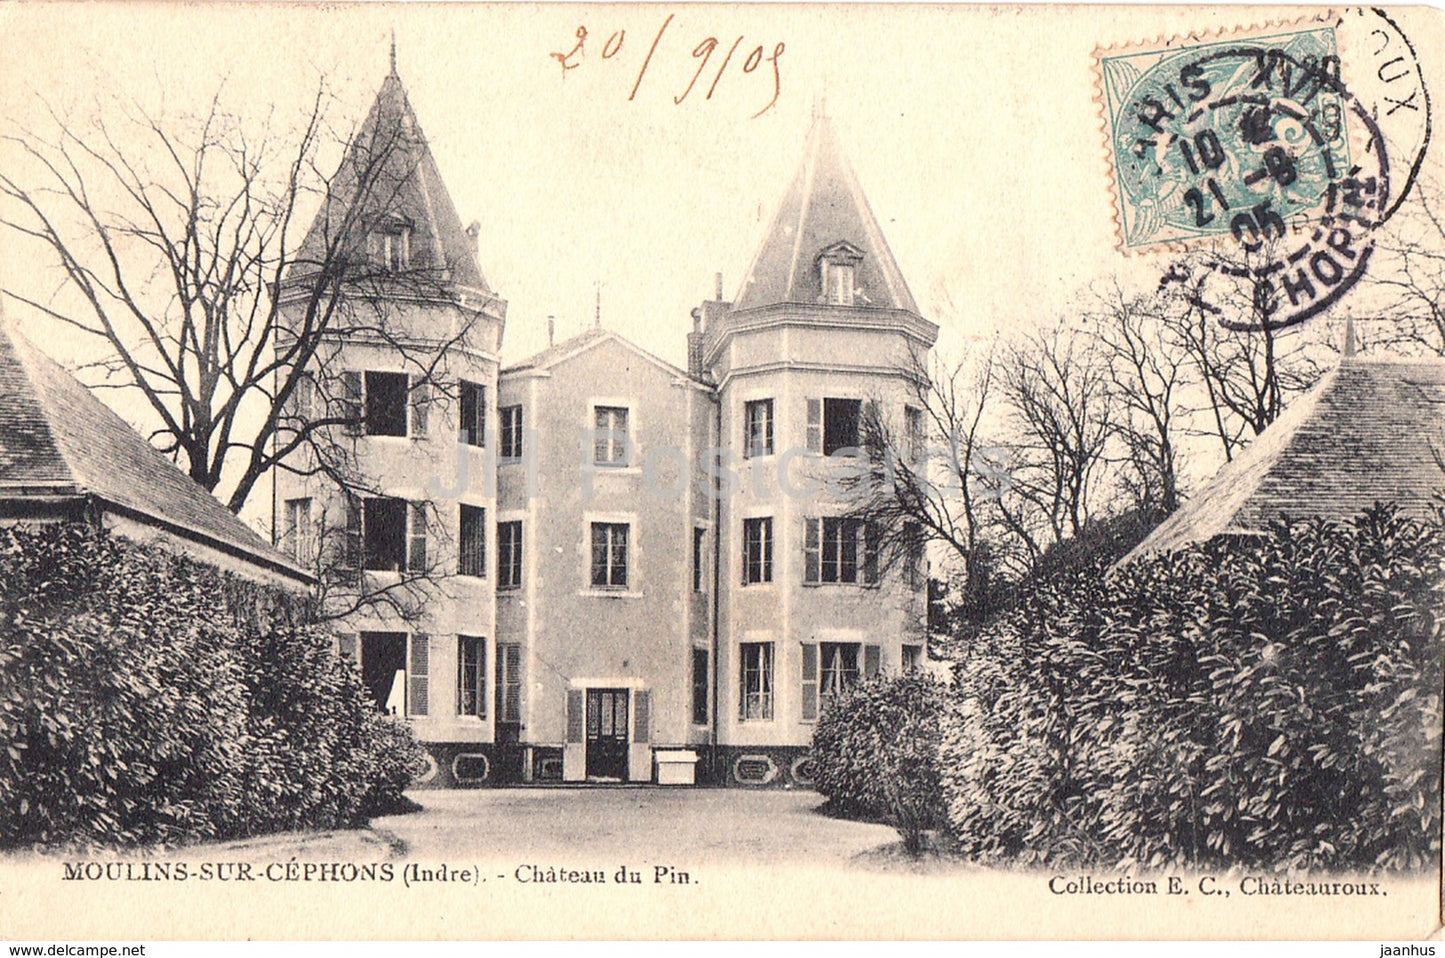 Moulins sur Cephons - Chateau du Pin - castle - old postcard - 1905 - France - used - JH Postcards